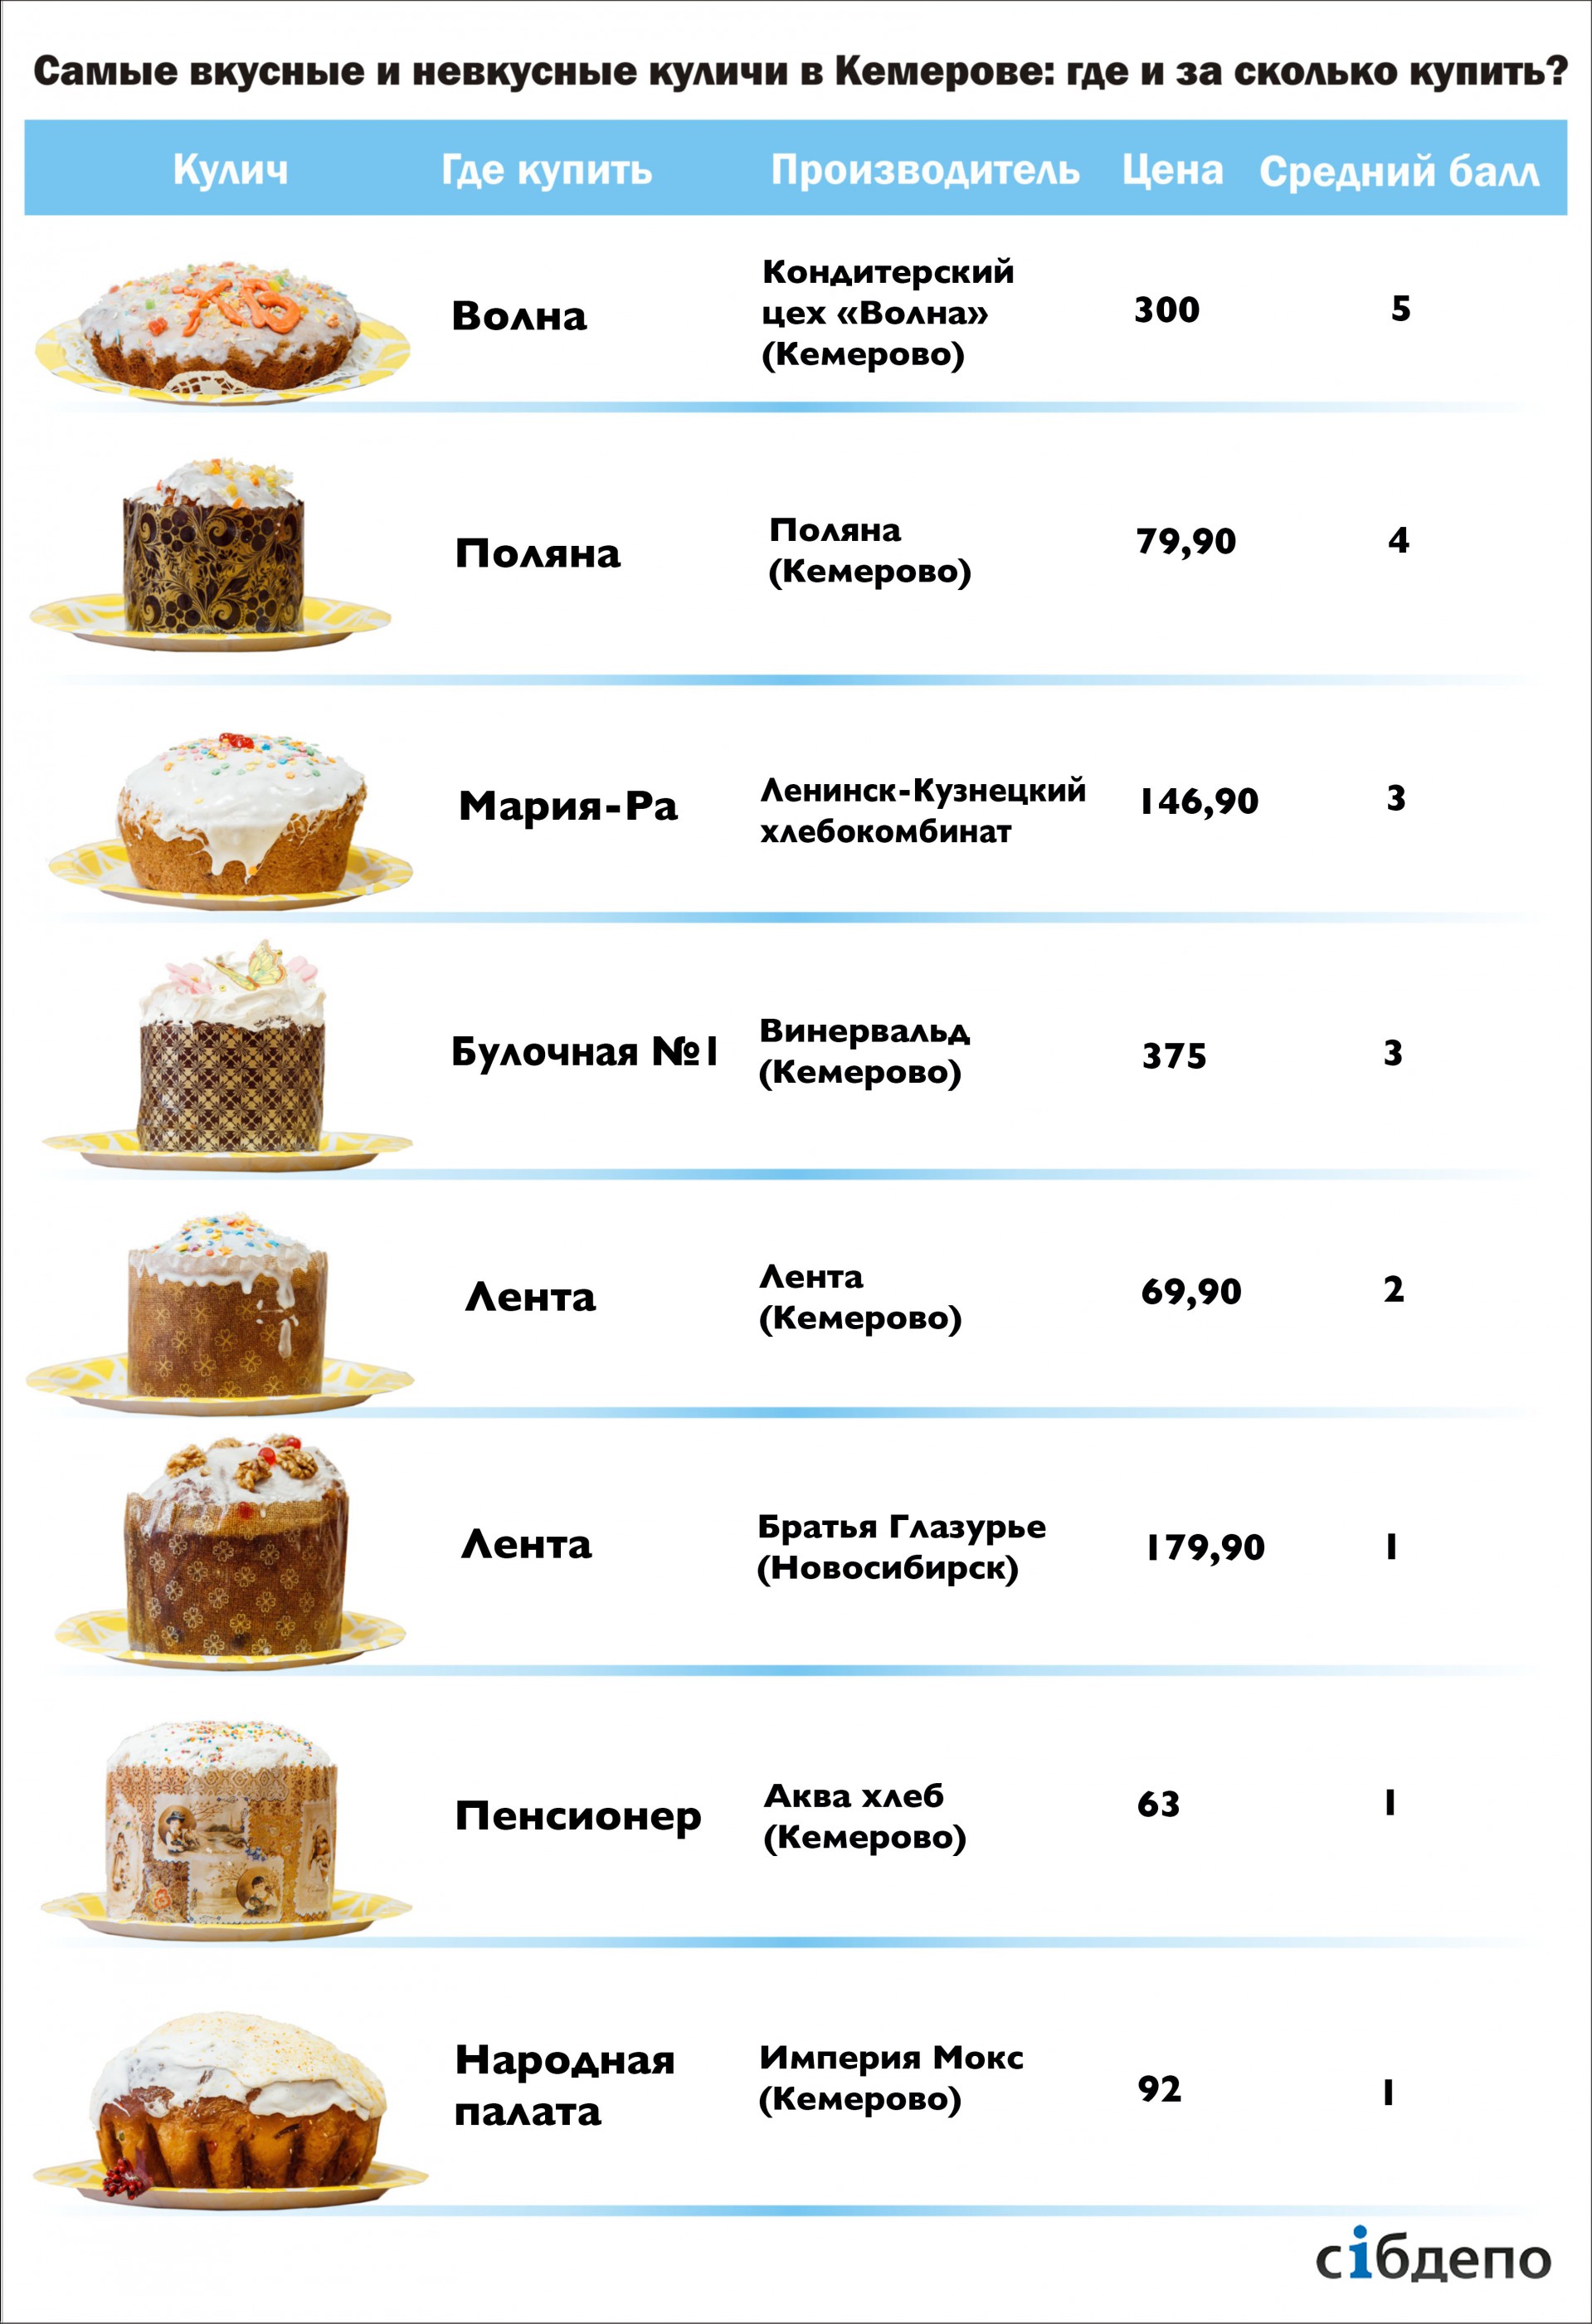 Выбираем самый вкусный пасхальный кулич в Кемерове